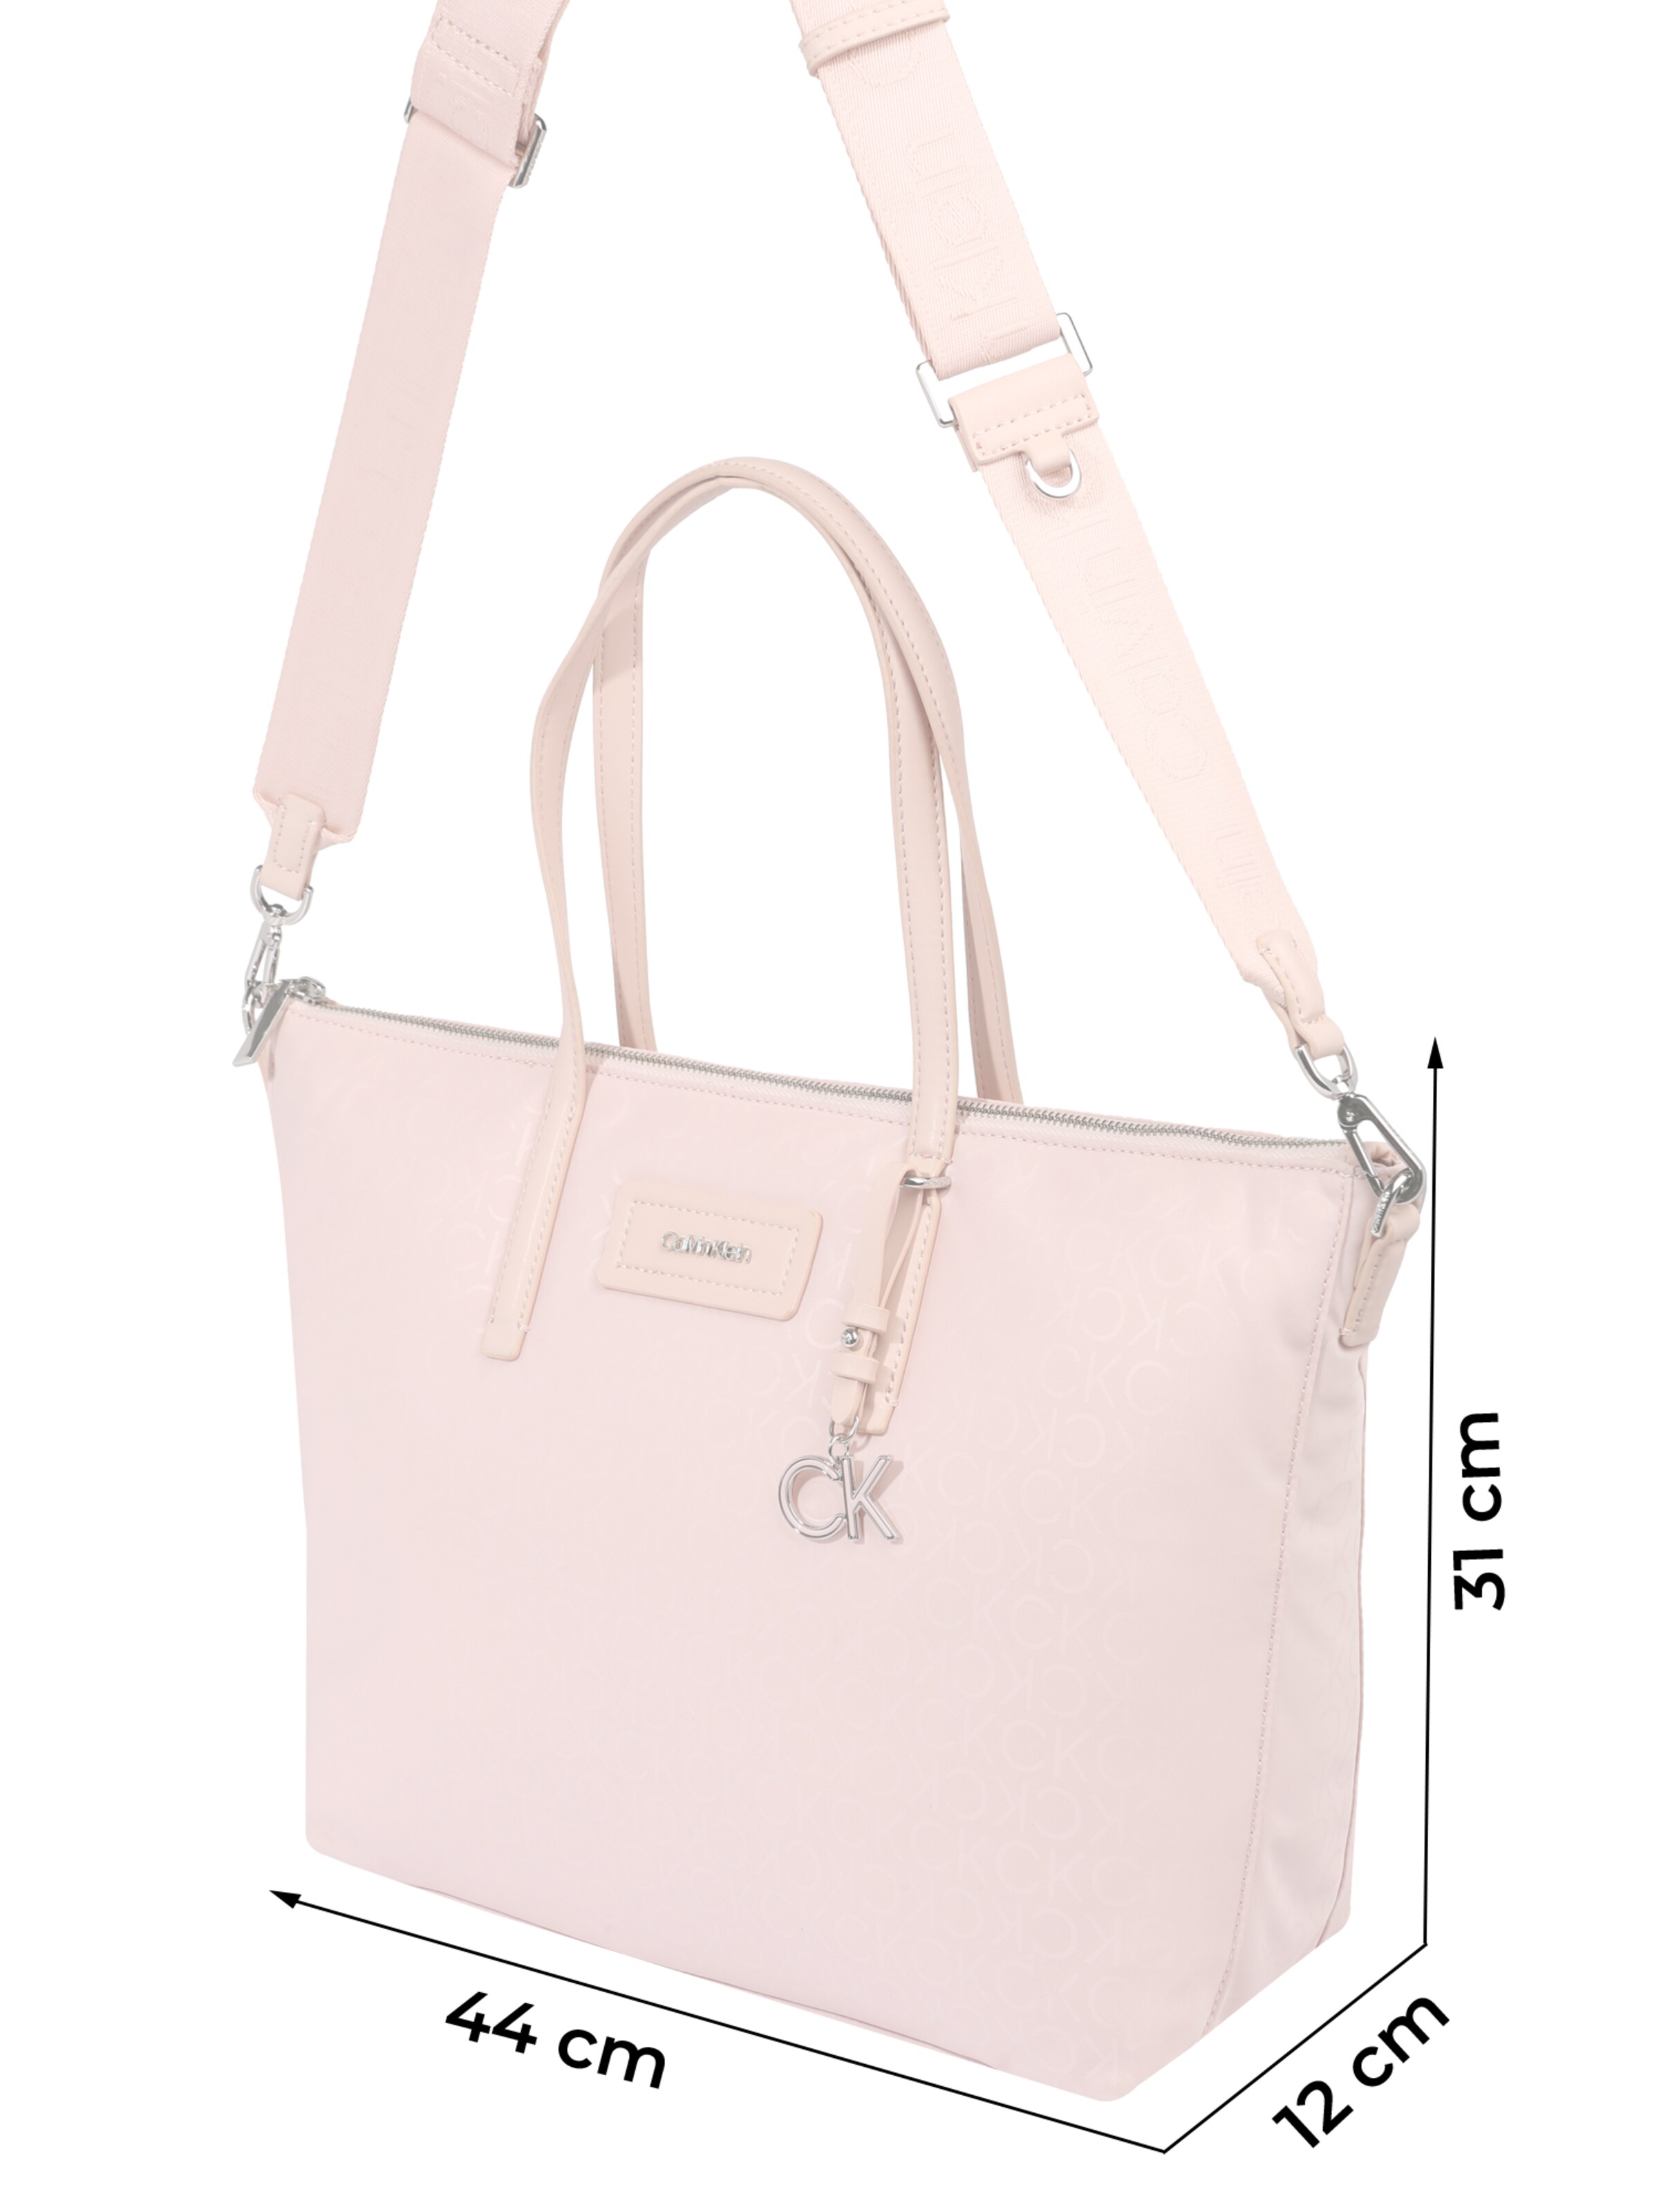 Frauen Taschen & Rucksäcke Calvin Klein Shopper in Rosa - MD55317